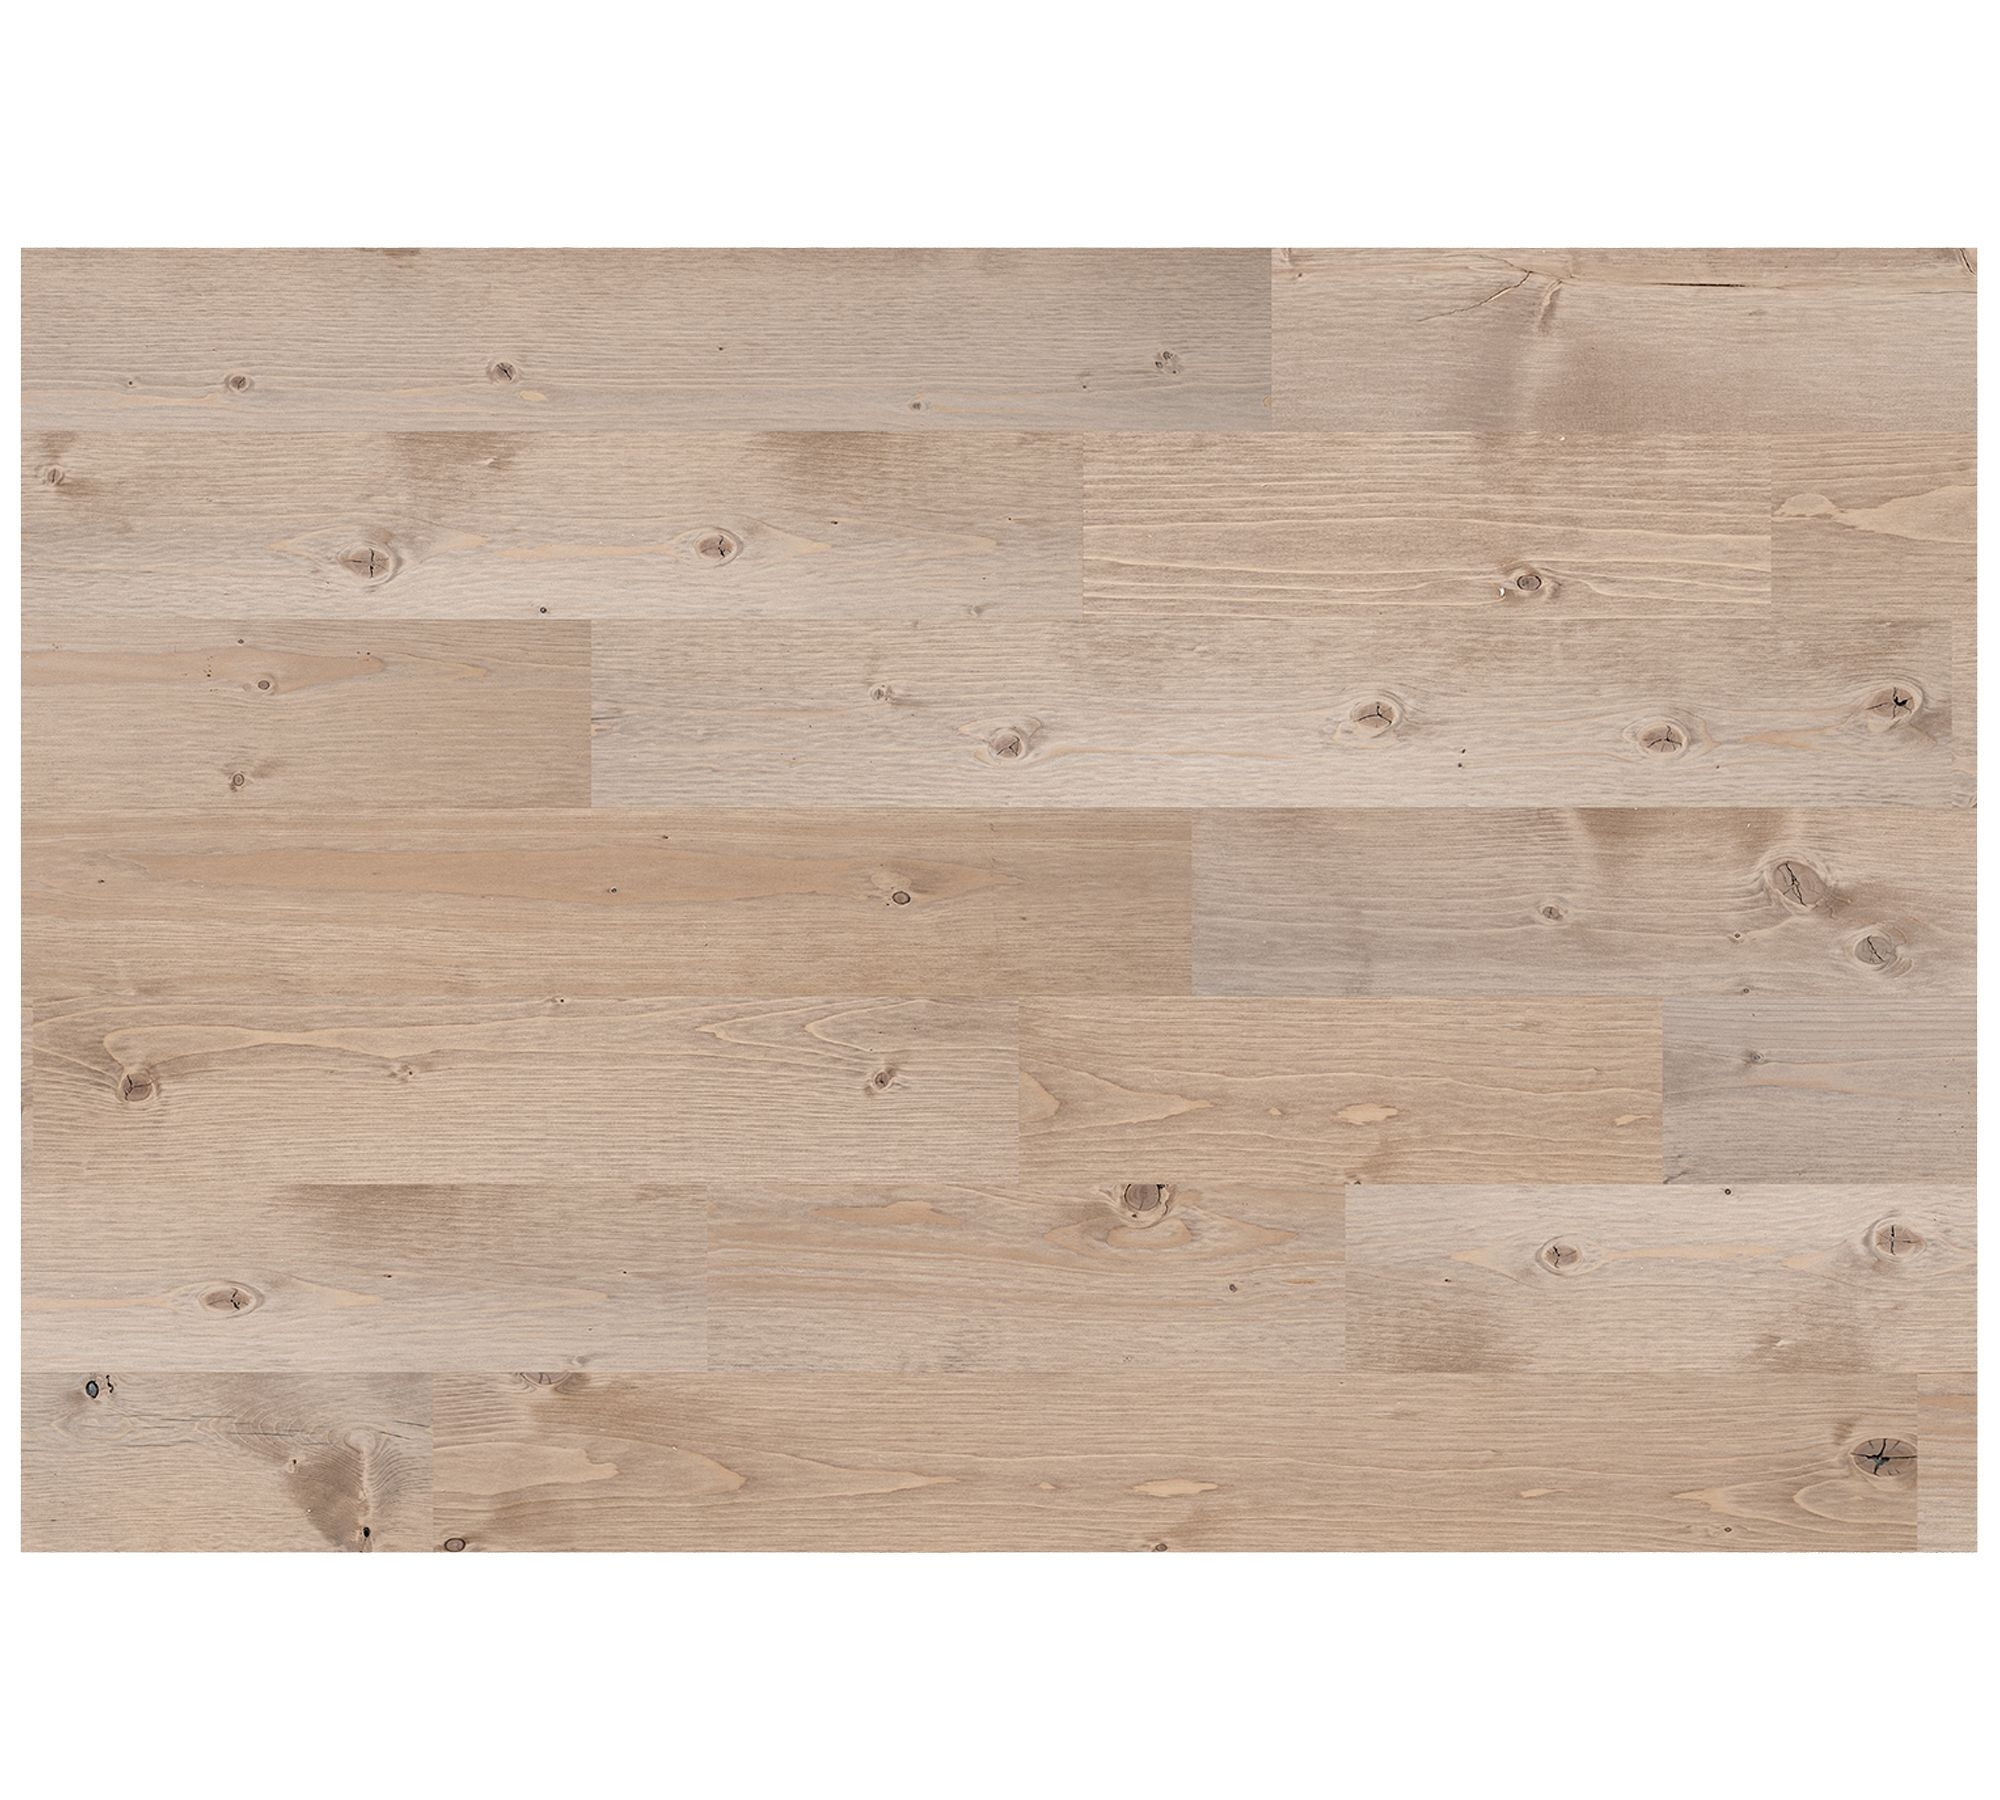 Stikwood Peel & Stick Wood Panels - Sandstone - Image 0